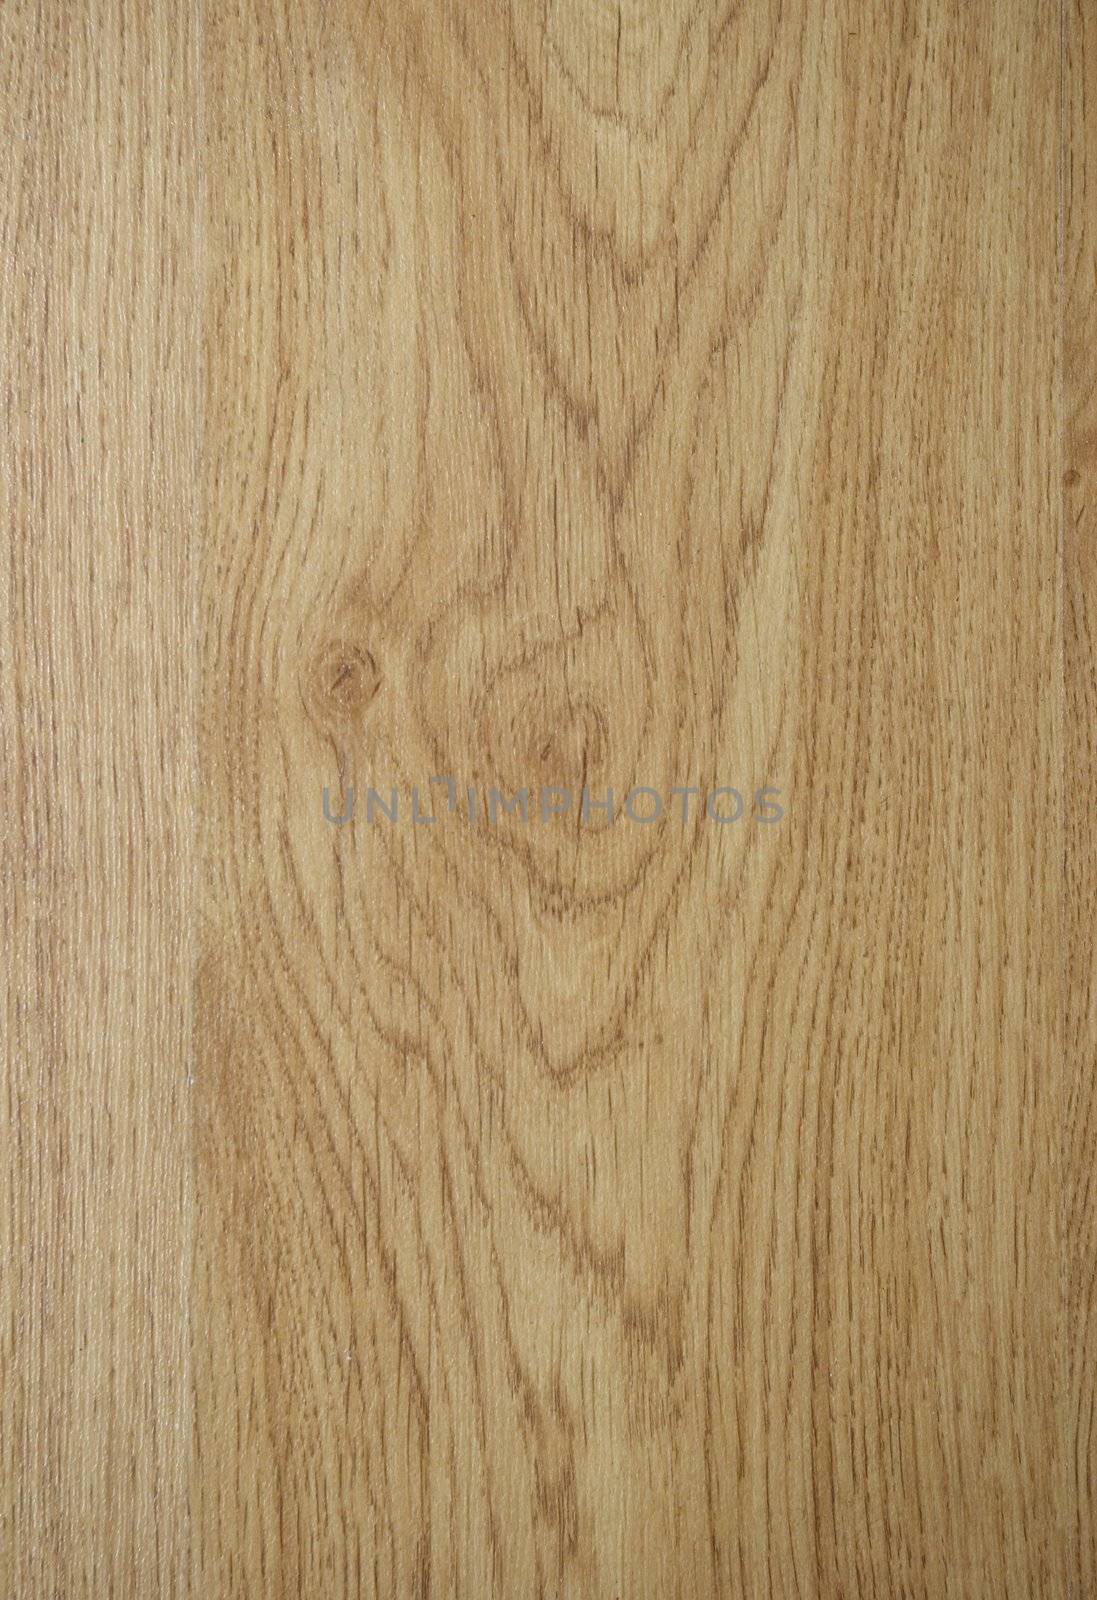 Texture of  wood by Pakhnyushchyy